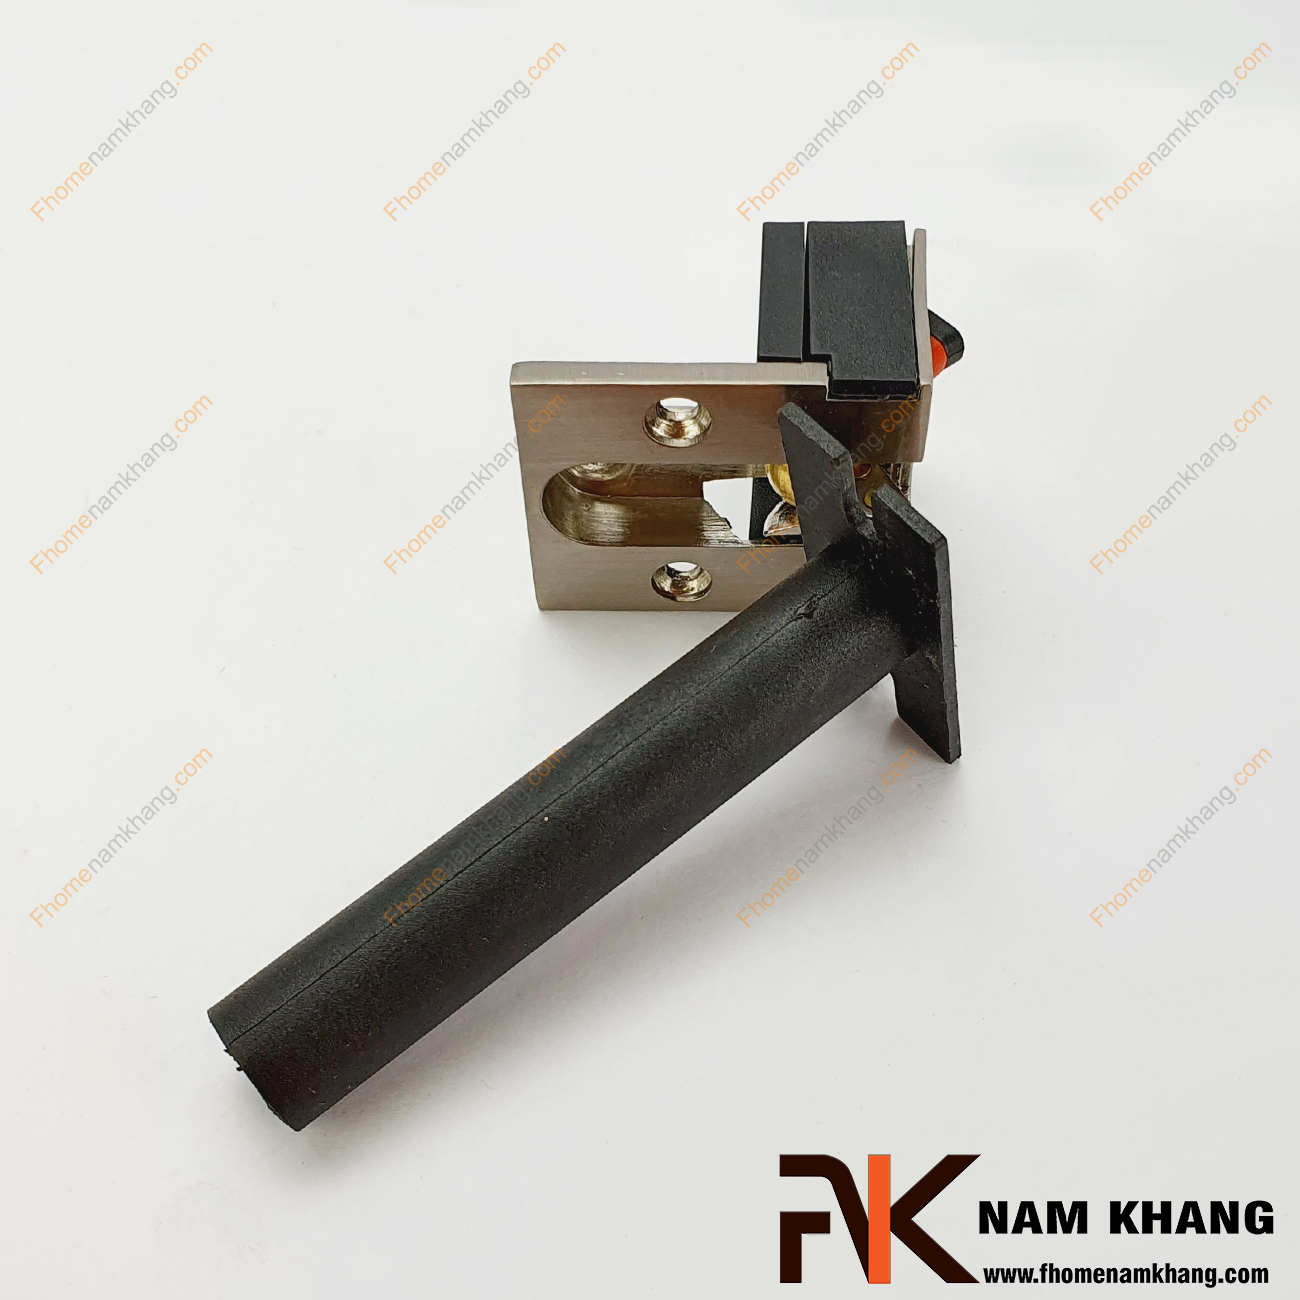 Chốt xích gài cửa an toàn NK800XV-D - dạng chốt âm gài cửa an toàn sử dụng trong nhiều dạng cửa nhà ở, chung cư, đặc biệt là các dòng cửa gỗ.